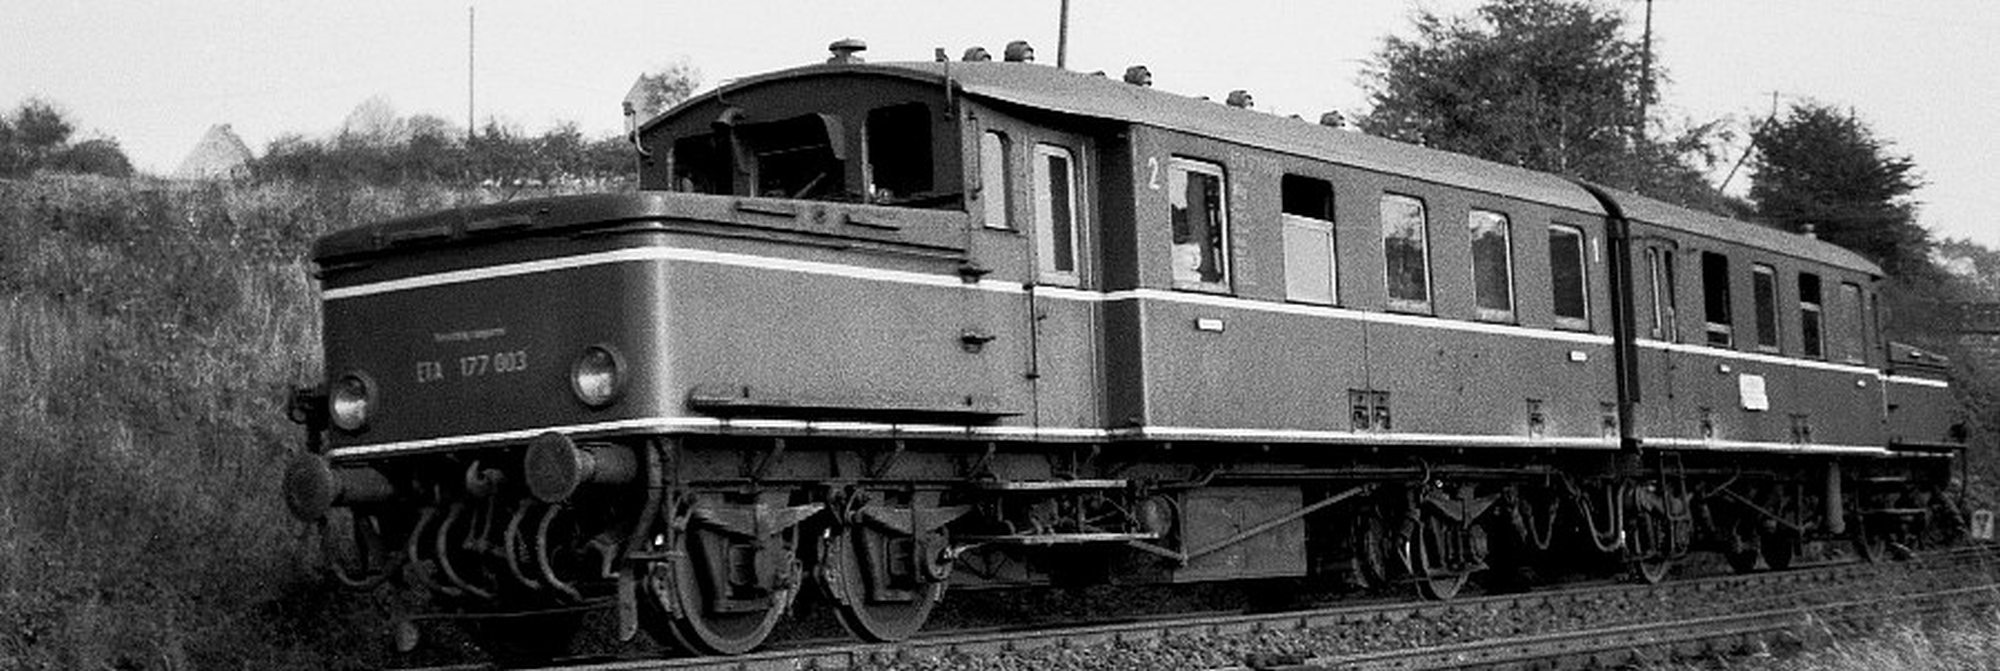 ETA 177 003 in 1956 on the Hattingen-Wuppertal line